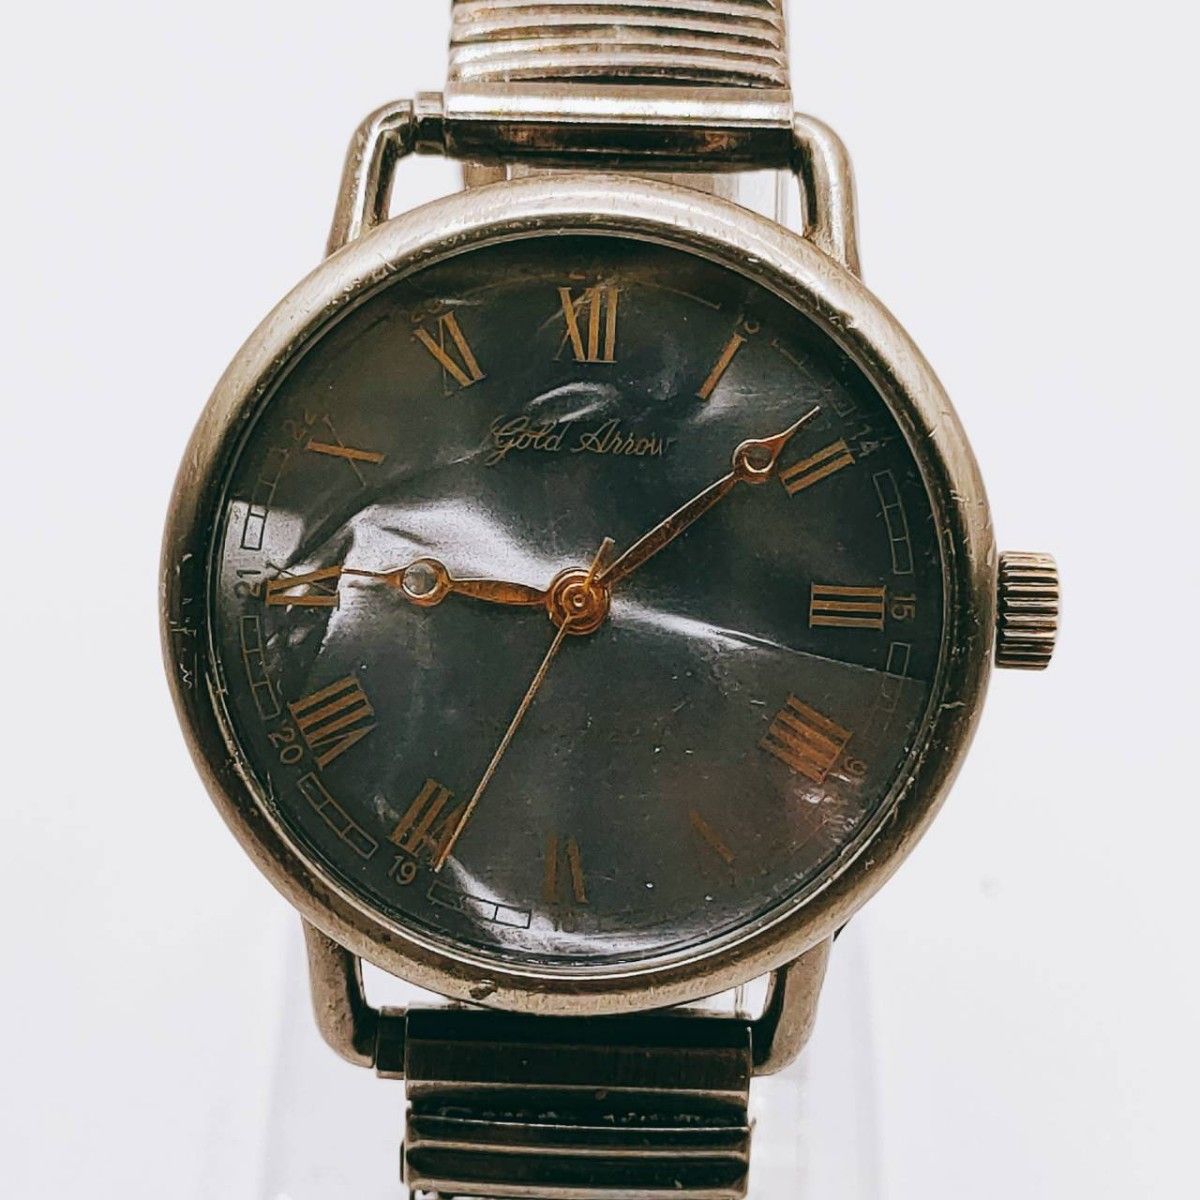 #180 【レトロ】gold arrow ゴールドアロウ 腕時計 アナログ 3針 黒文字盤 時計 とけい トケイ アクセサリー